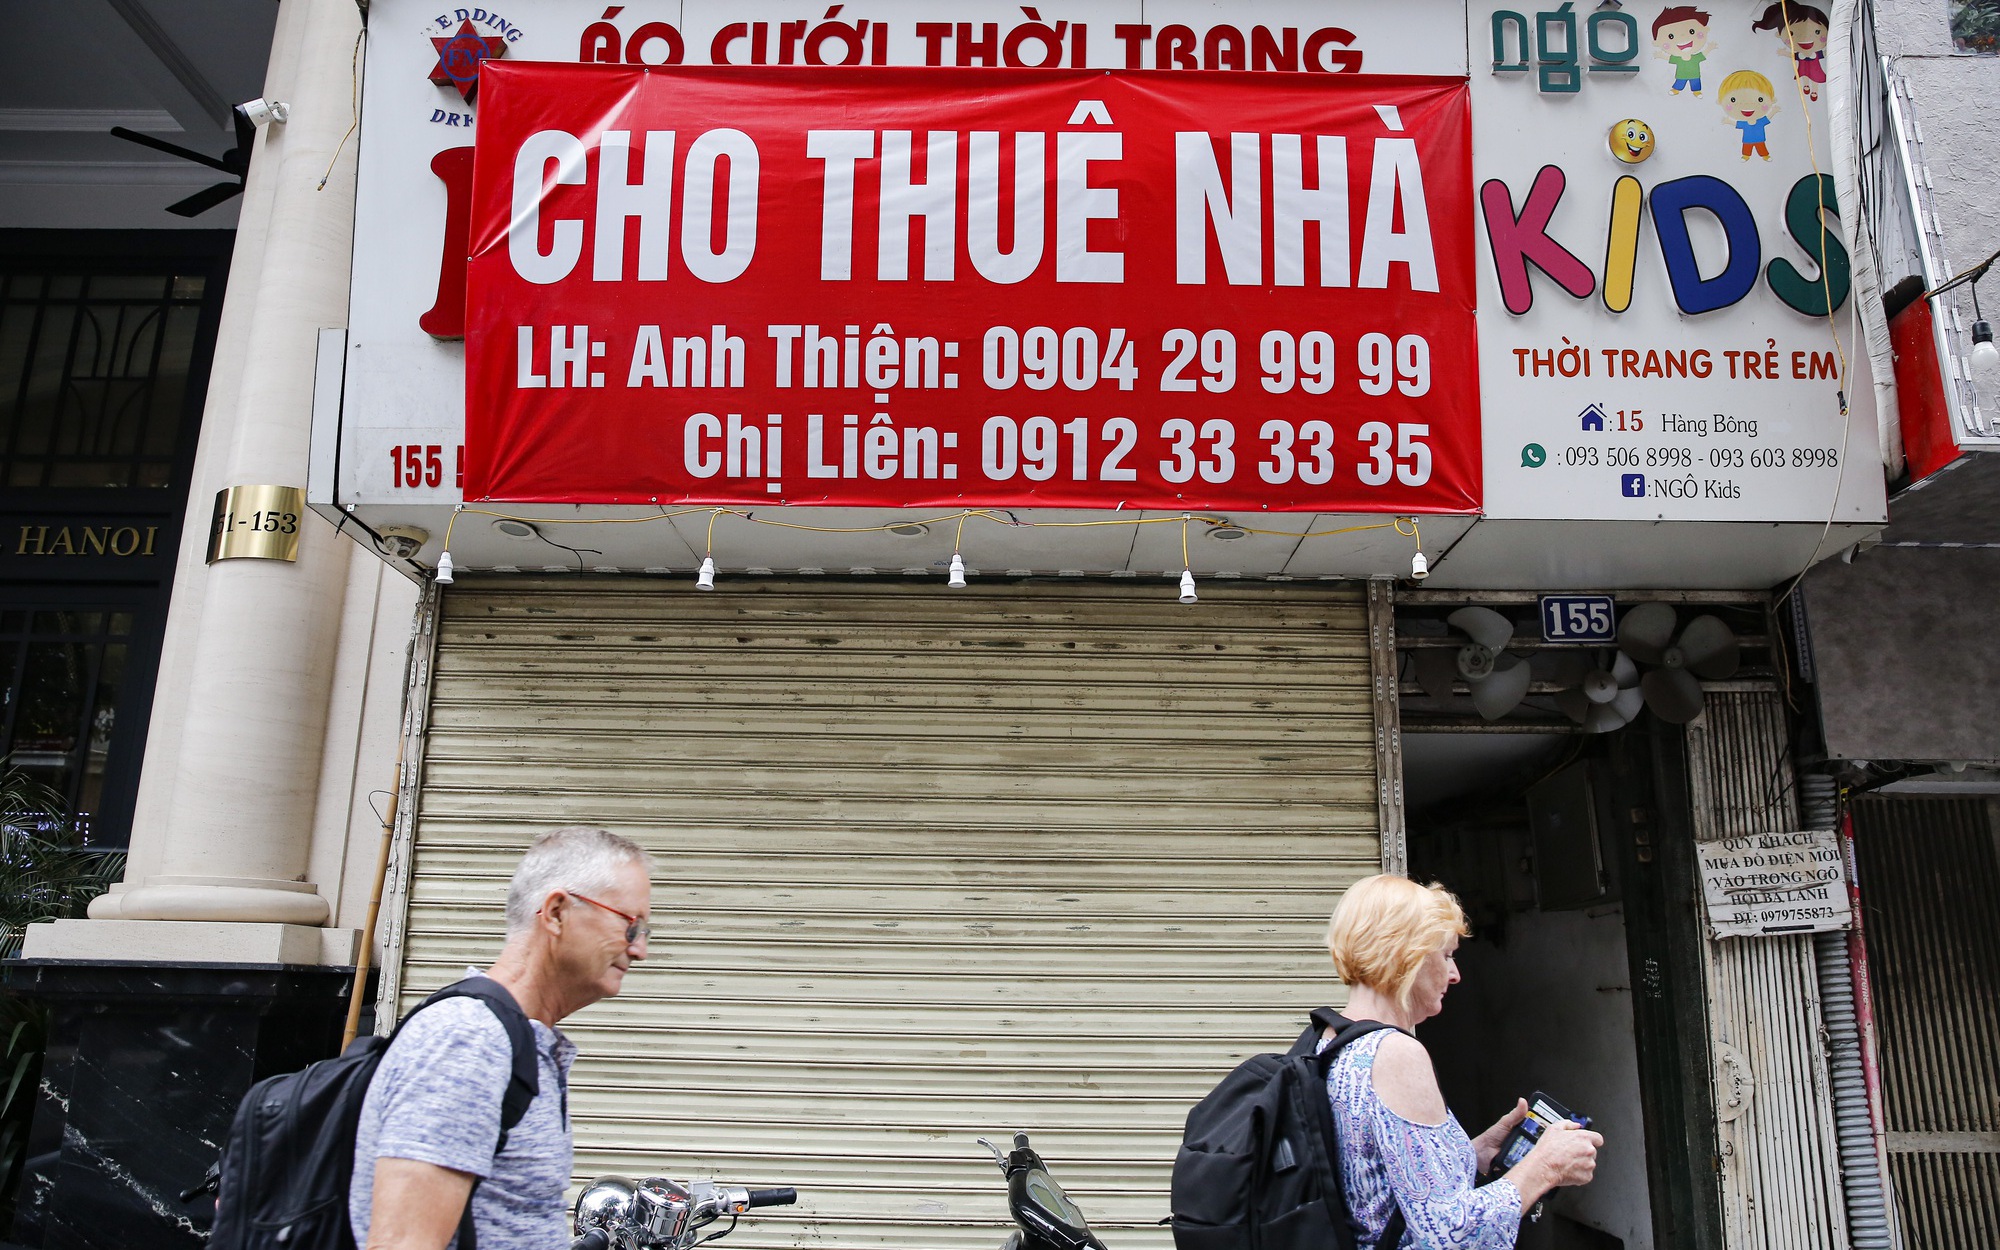 Hàng loạt nhà, cửa hàng ở phố cổ Hà Nội treo biển cho thuê